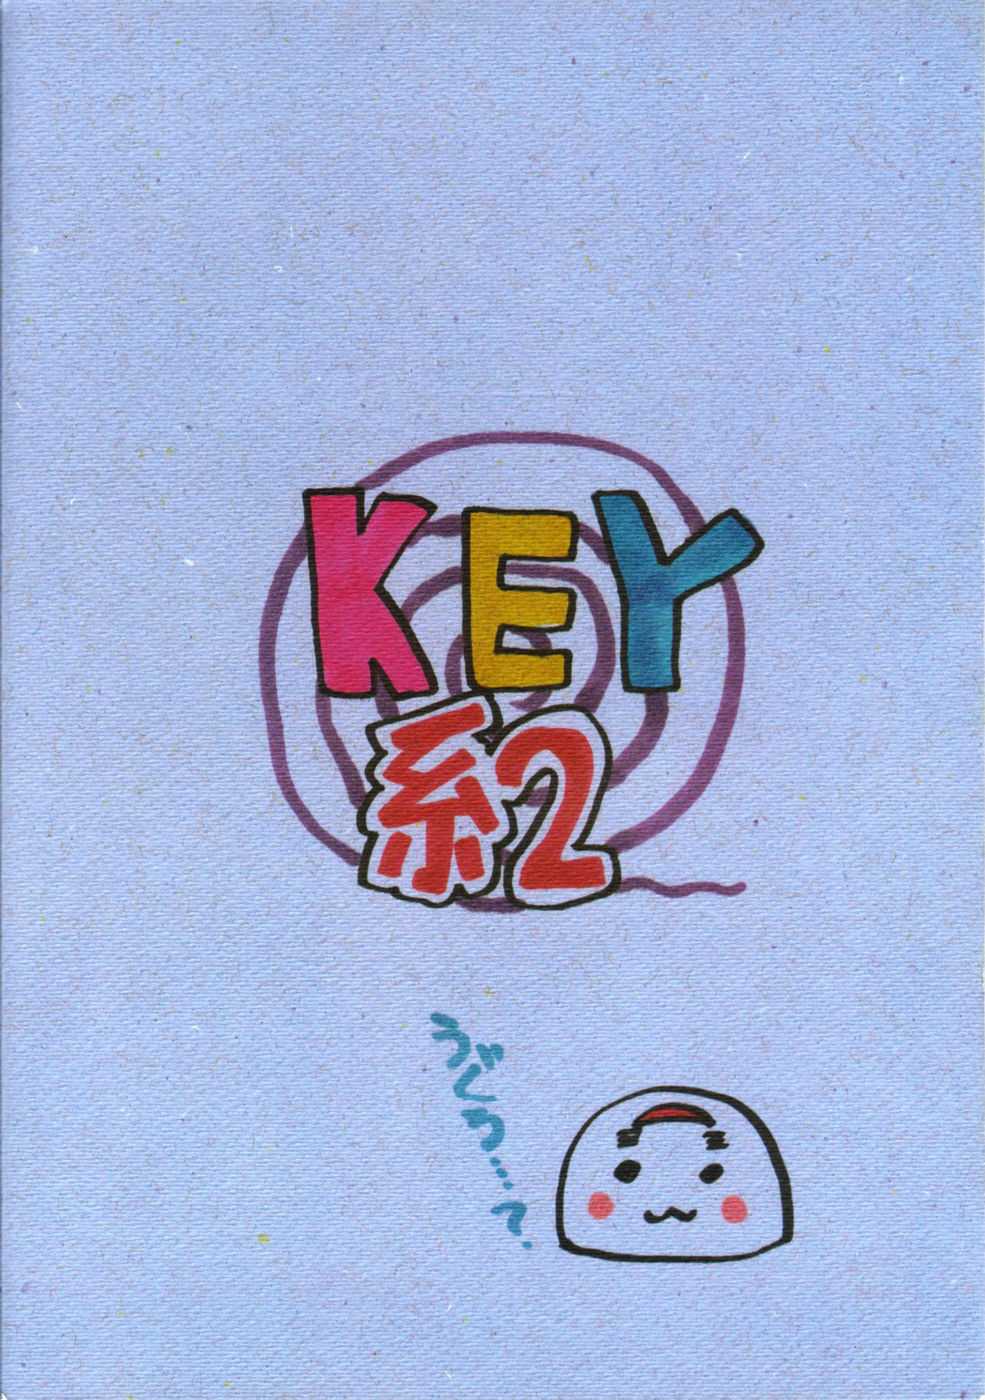 Key 2 [Air] 